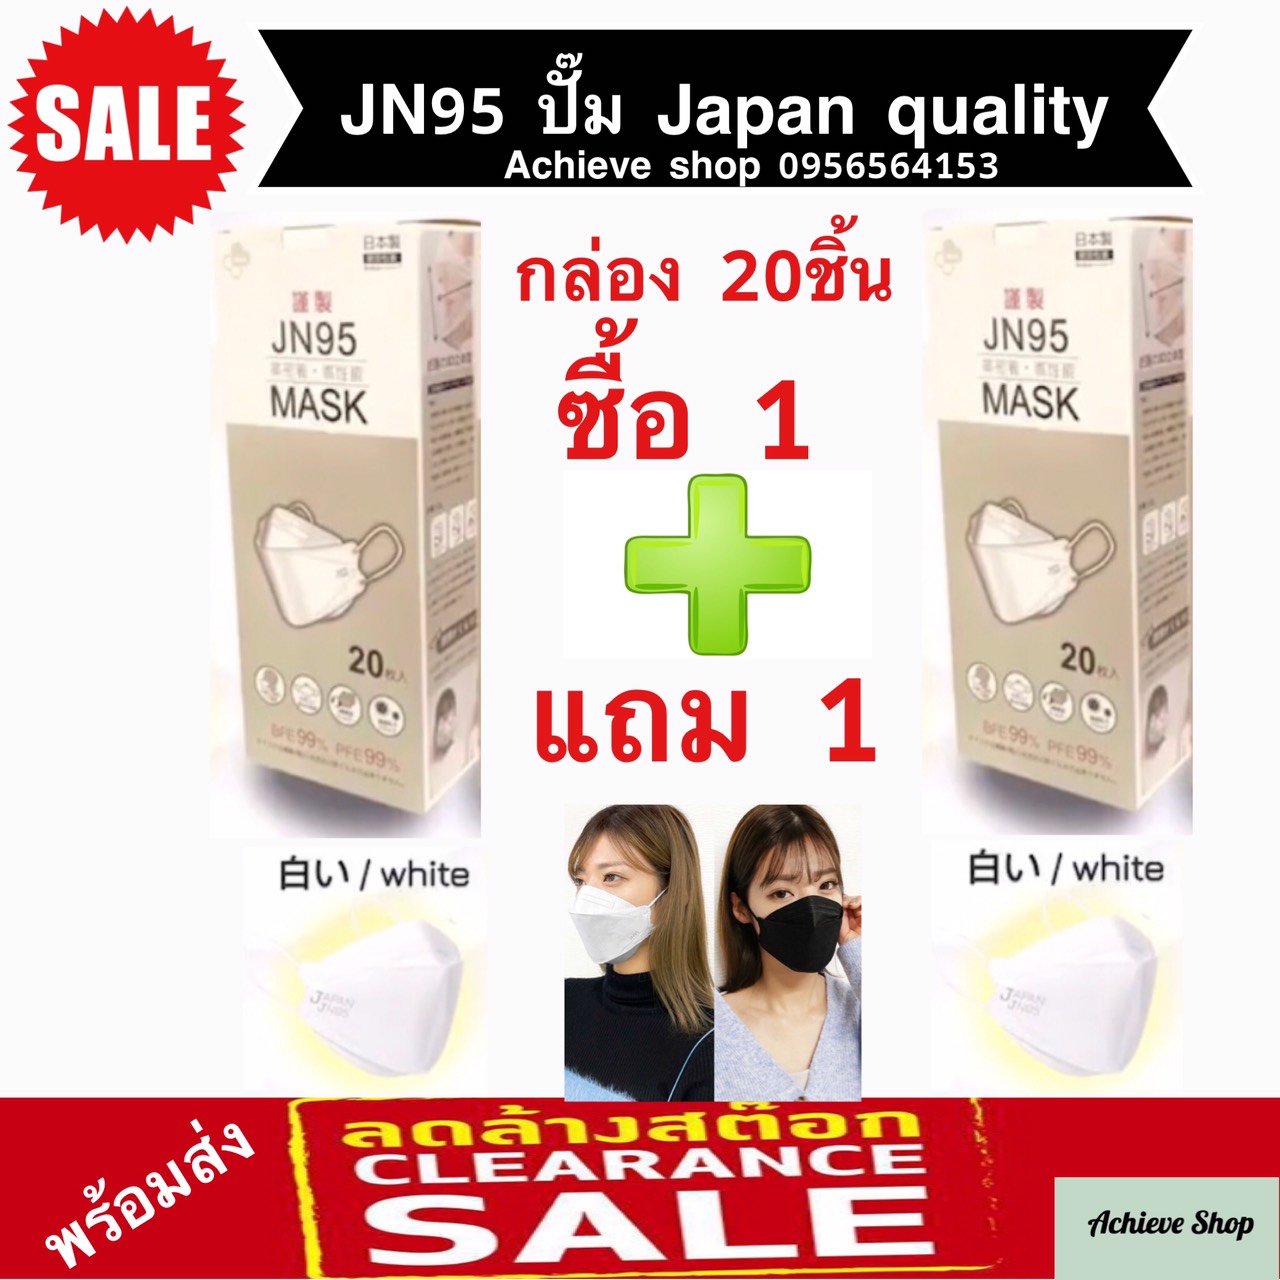 JN95 MASK กล่อง 20ชิ้น เซ็ทสุดคุ้ม ซื้อ 1 แถม 1 หน้ากากอนามัยทรง 3D มาตรฐานญี่ปุ่น ยอดนิยม มีทั้งสีขาว สีดำ ปั๊ม Japan ทุกชิ้น แท้ 100%